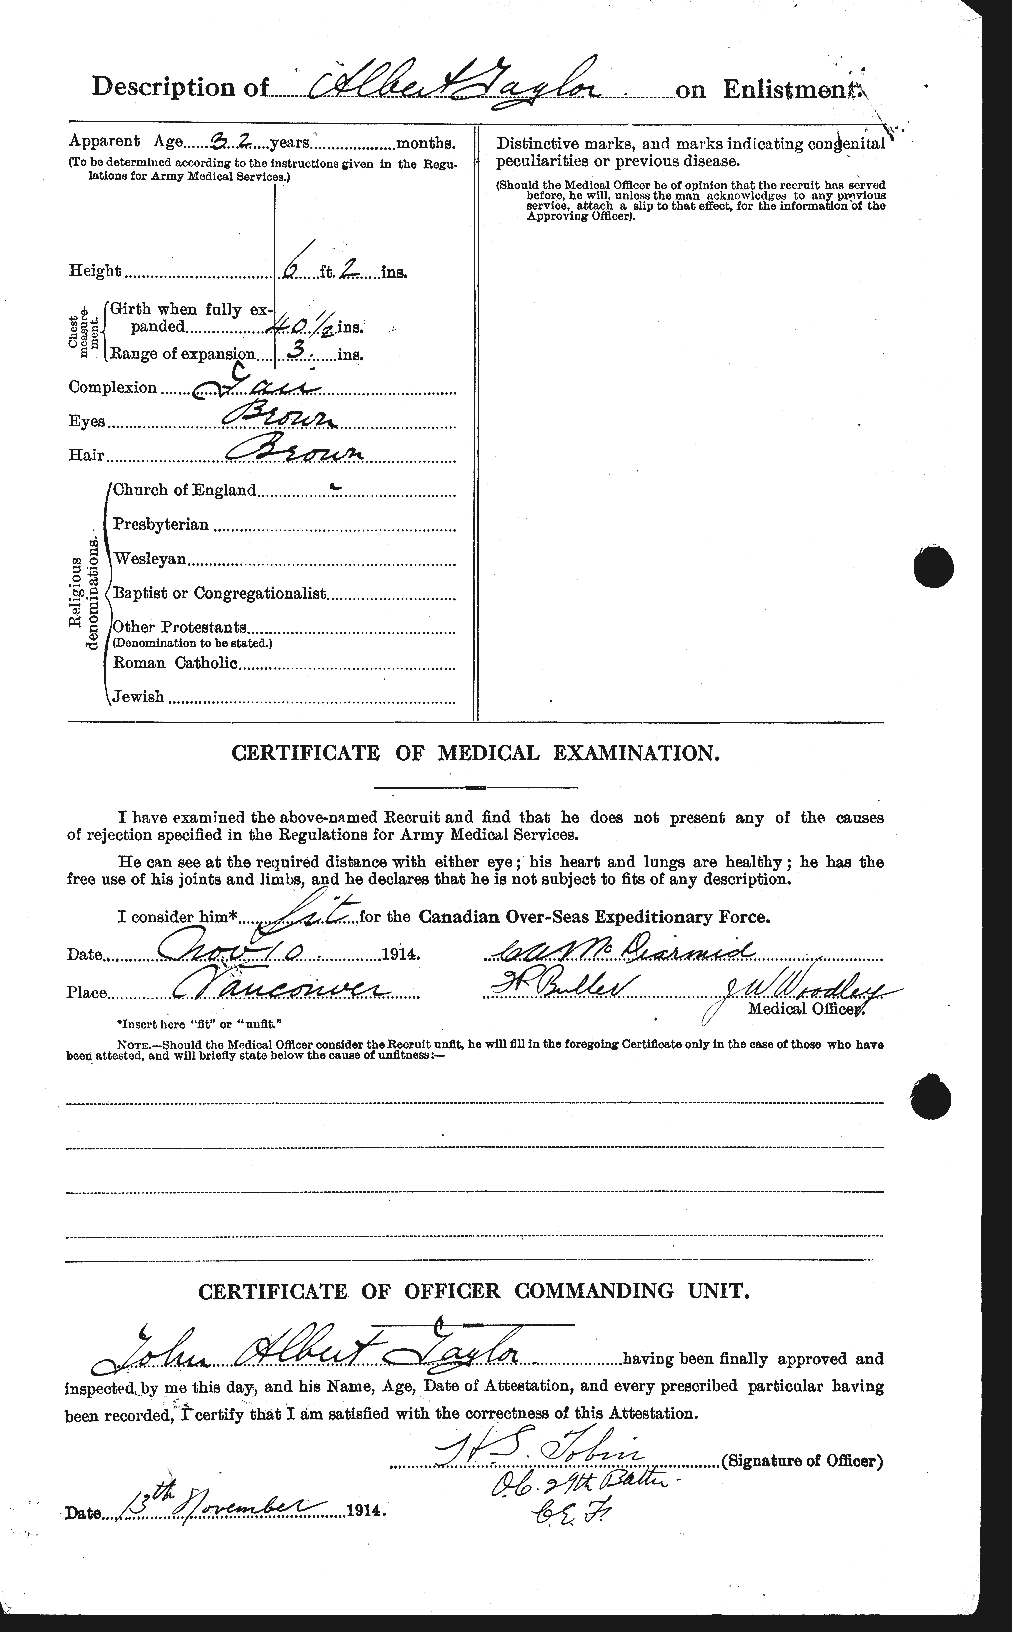 Dossiers du Personnel de la Première Guerre mondiale - CEC 627036b